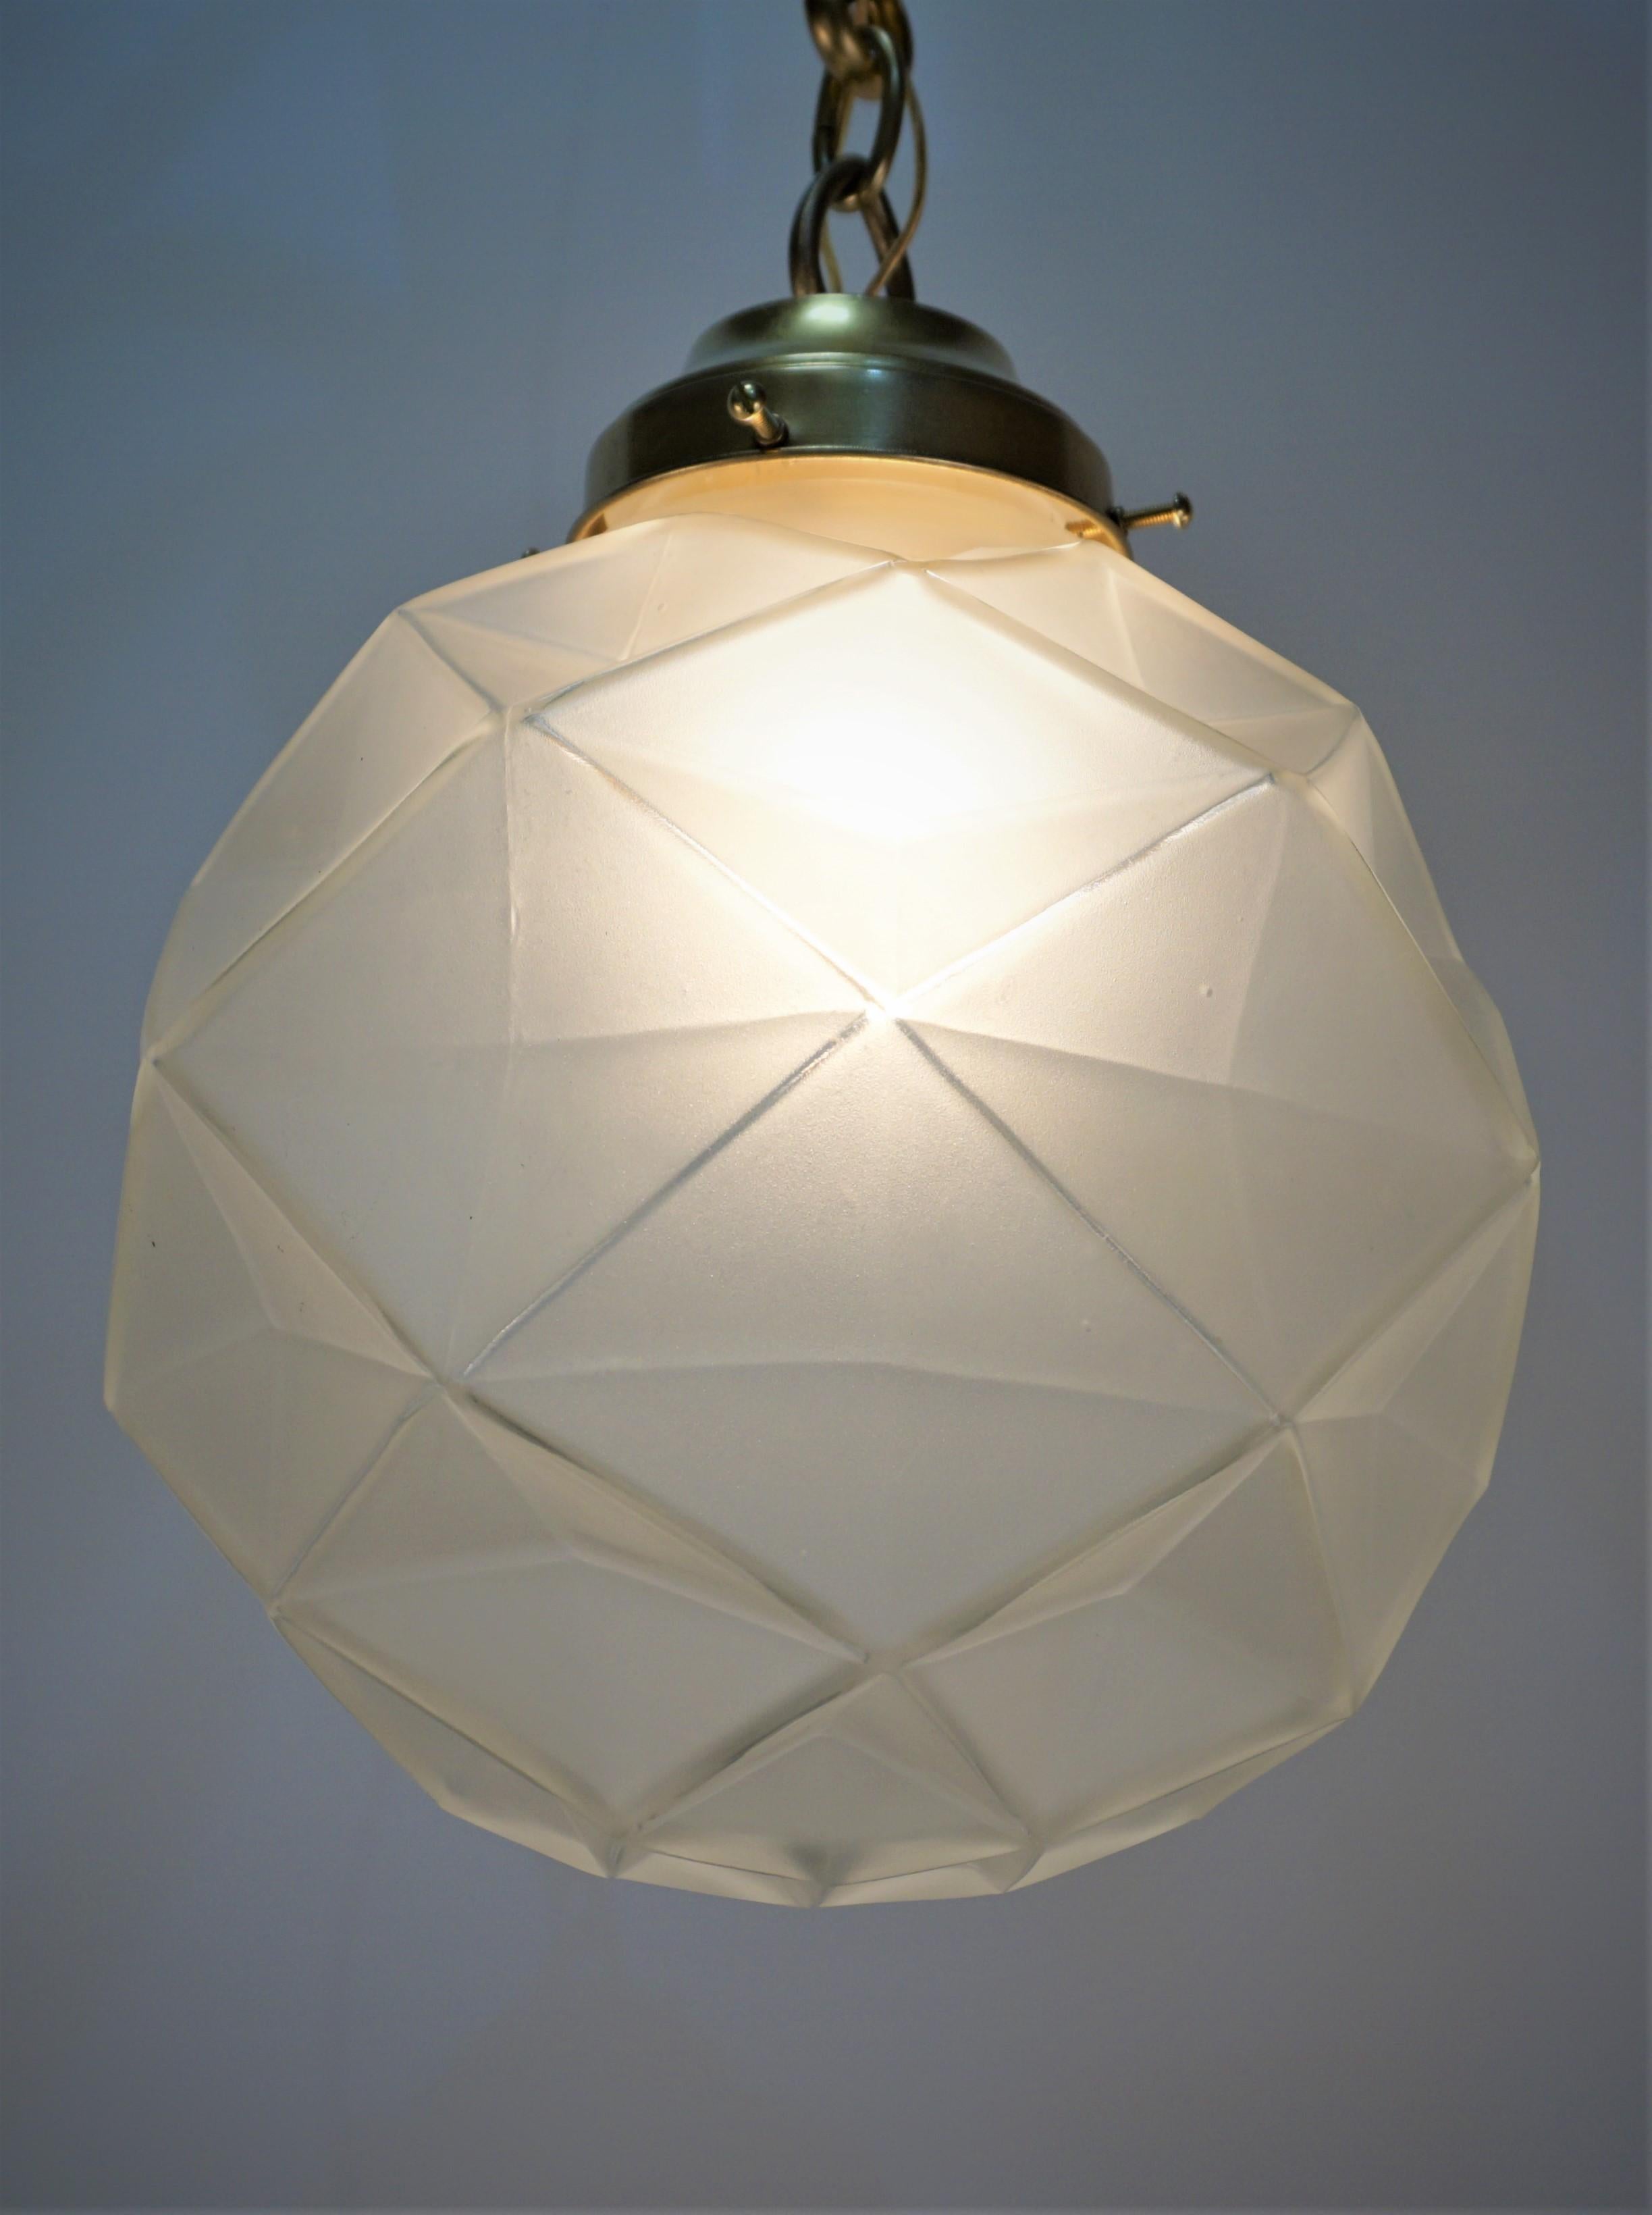 Schöne klare Frost geometrische Design Glas Kugel hängenden Kronleuchter mit Bronze Hardware.
Einzelne Glühbirne, max. 250Watt.